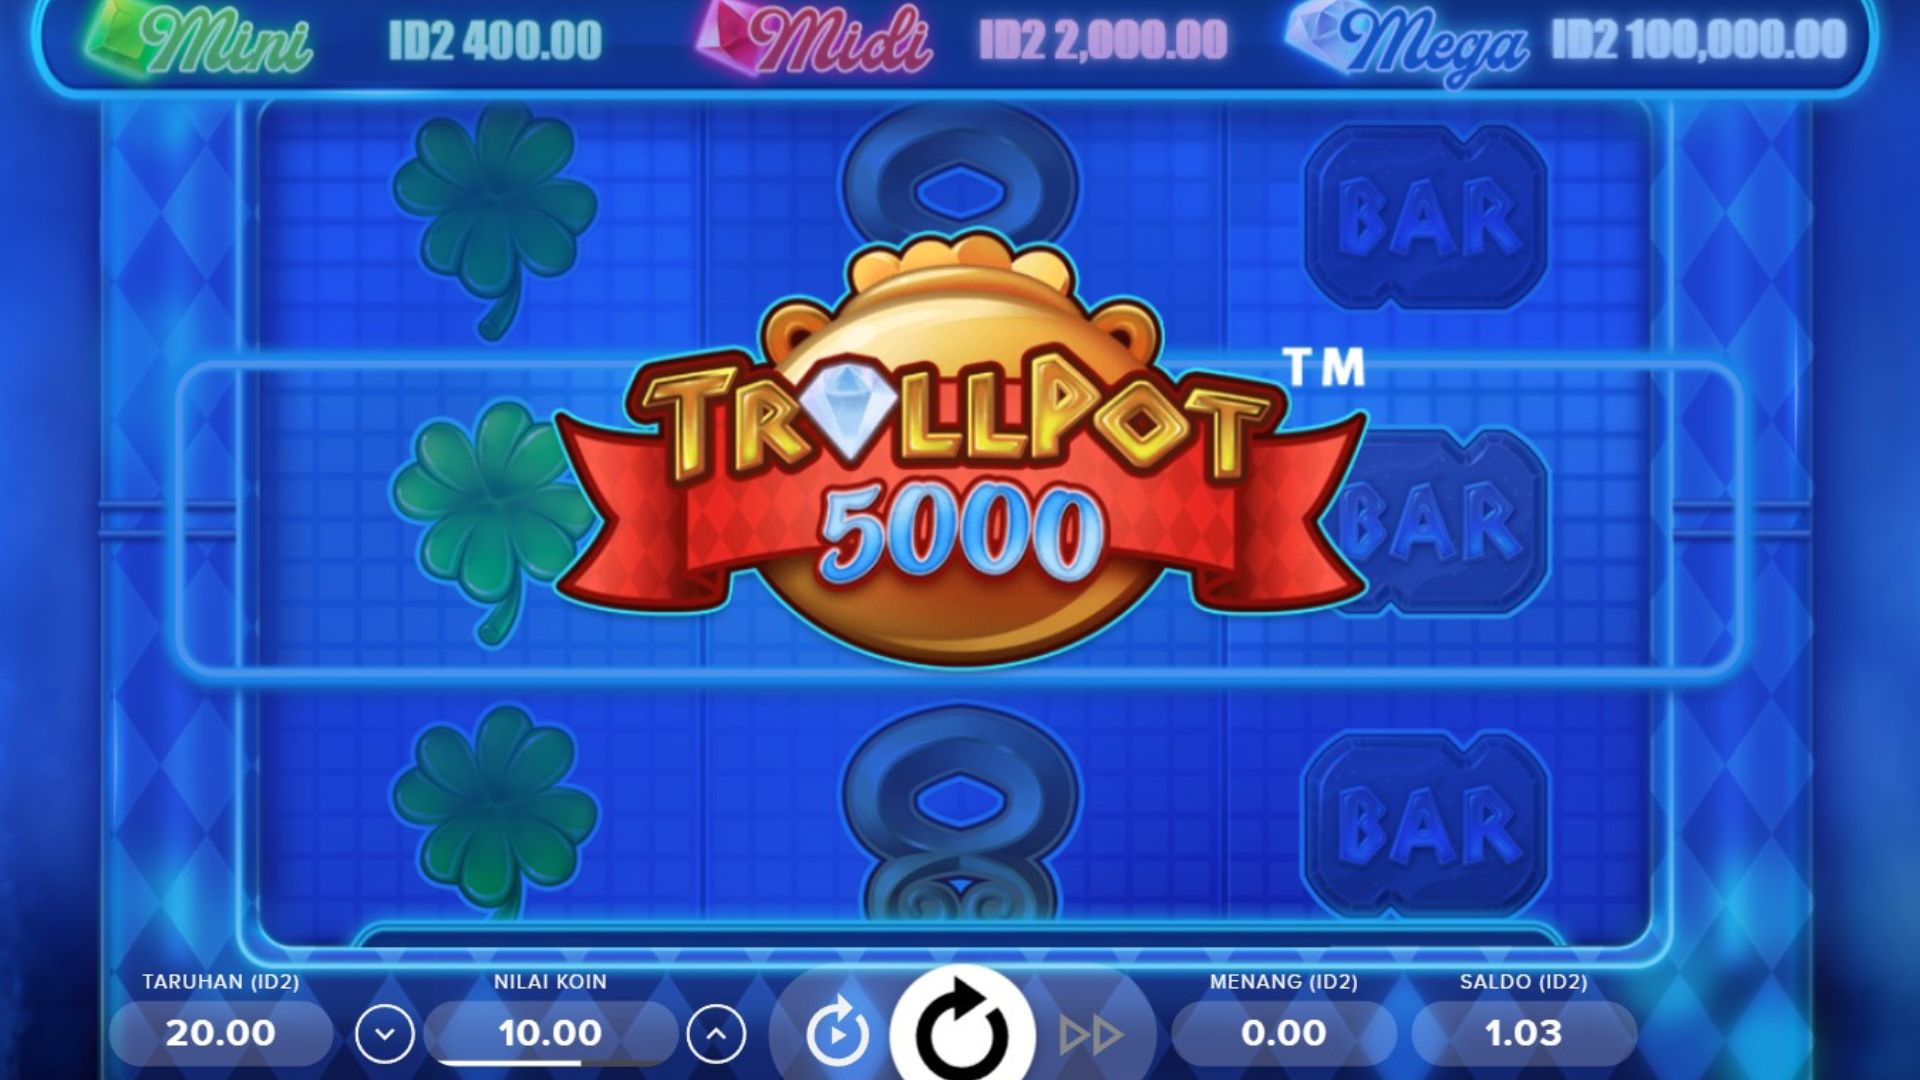 tampilan game slot trollpot 5000